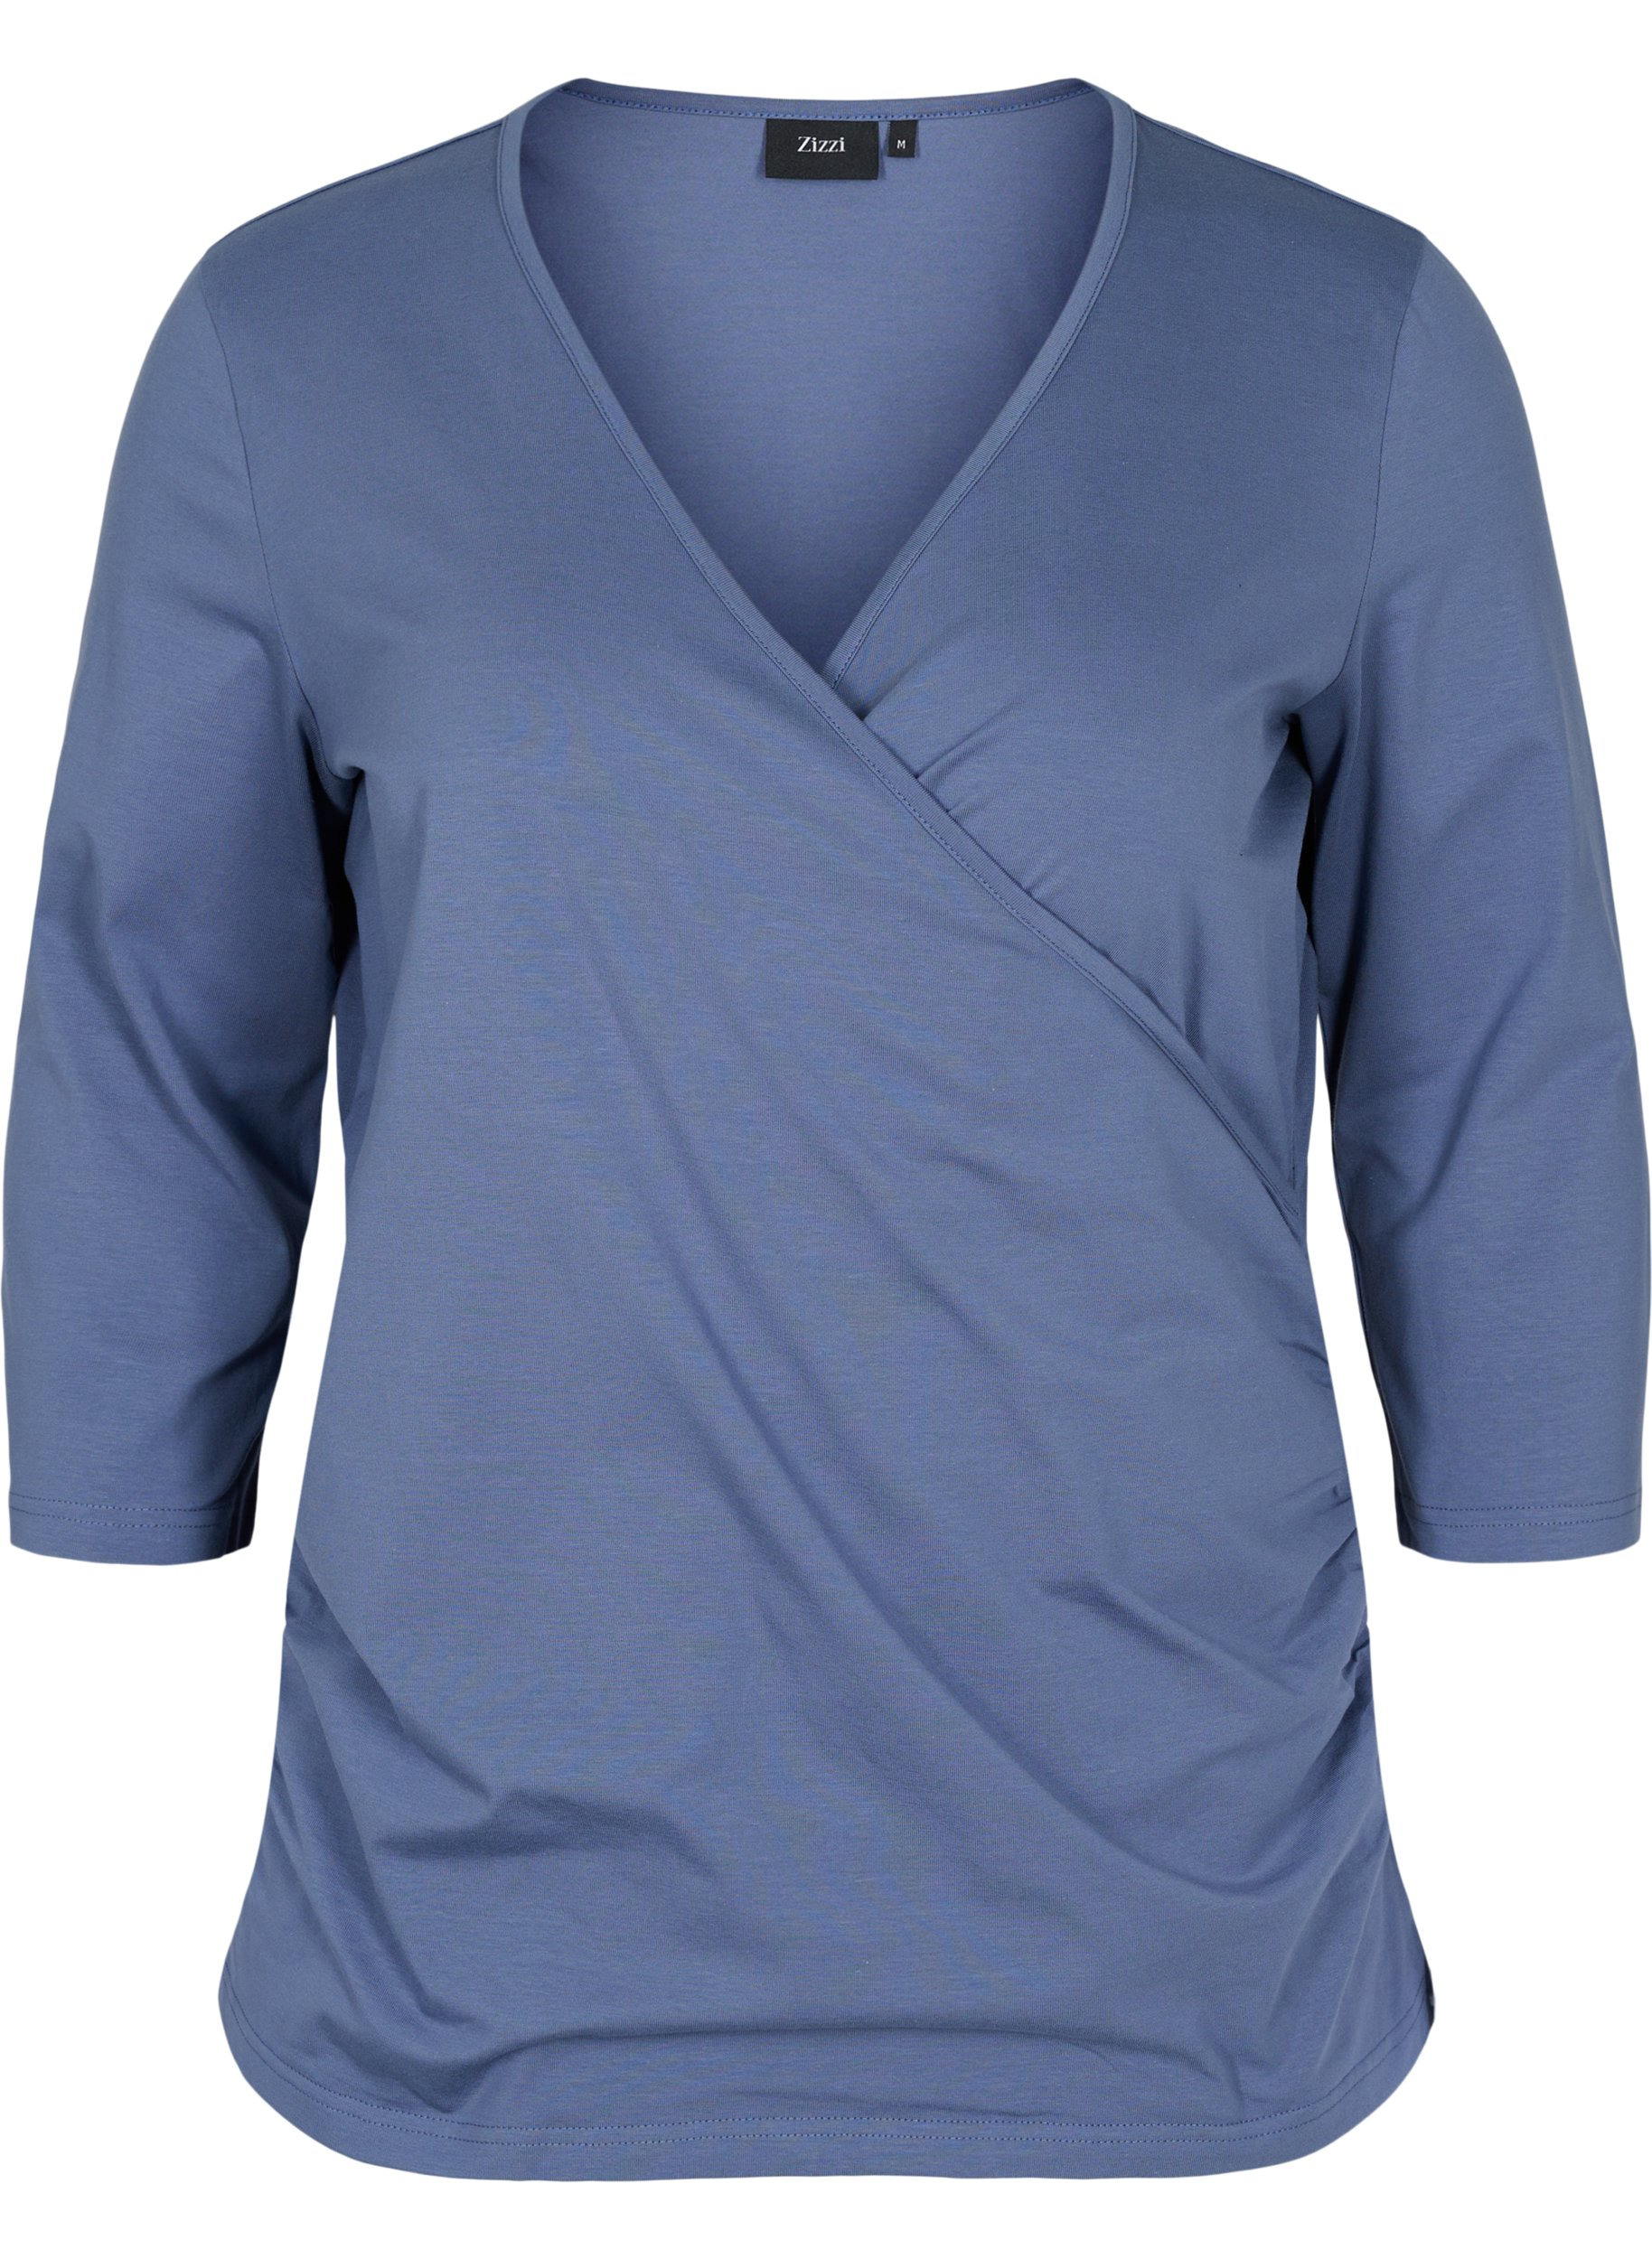 Katoenen blouse met 3/4 mouwen en wikkel, Vintage Indigo